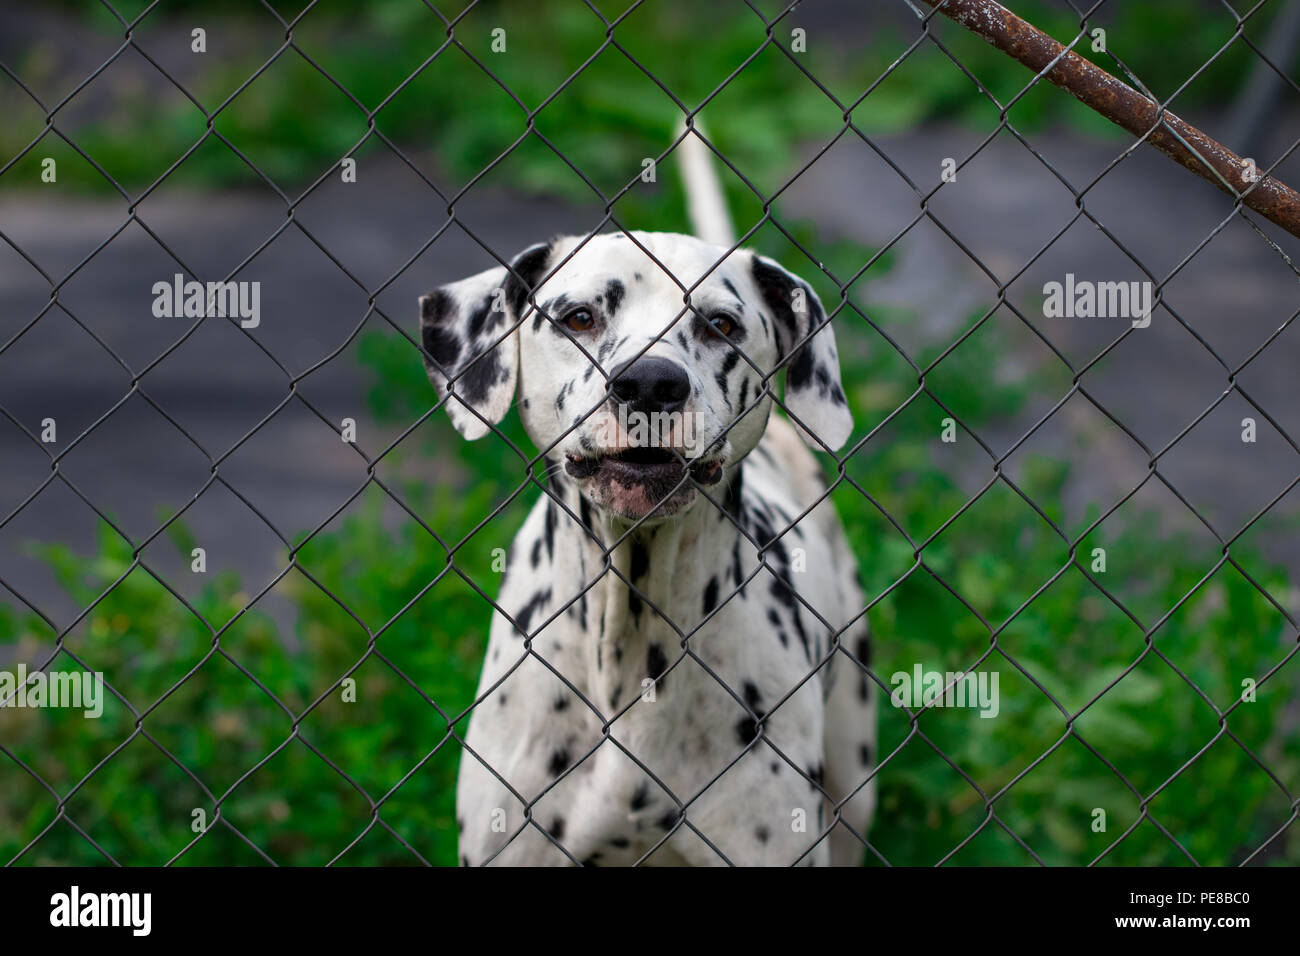 Hund Hinter Dem Zaun Im Kafig Betrachtet Wird Zum Schutz Der Tiere Stockfotografie Alamy